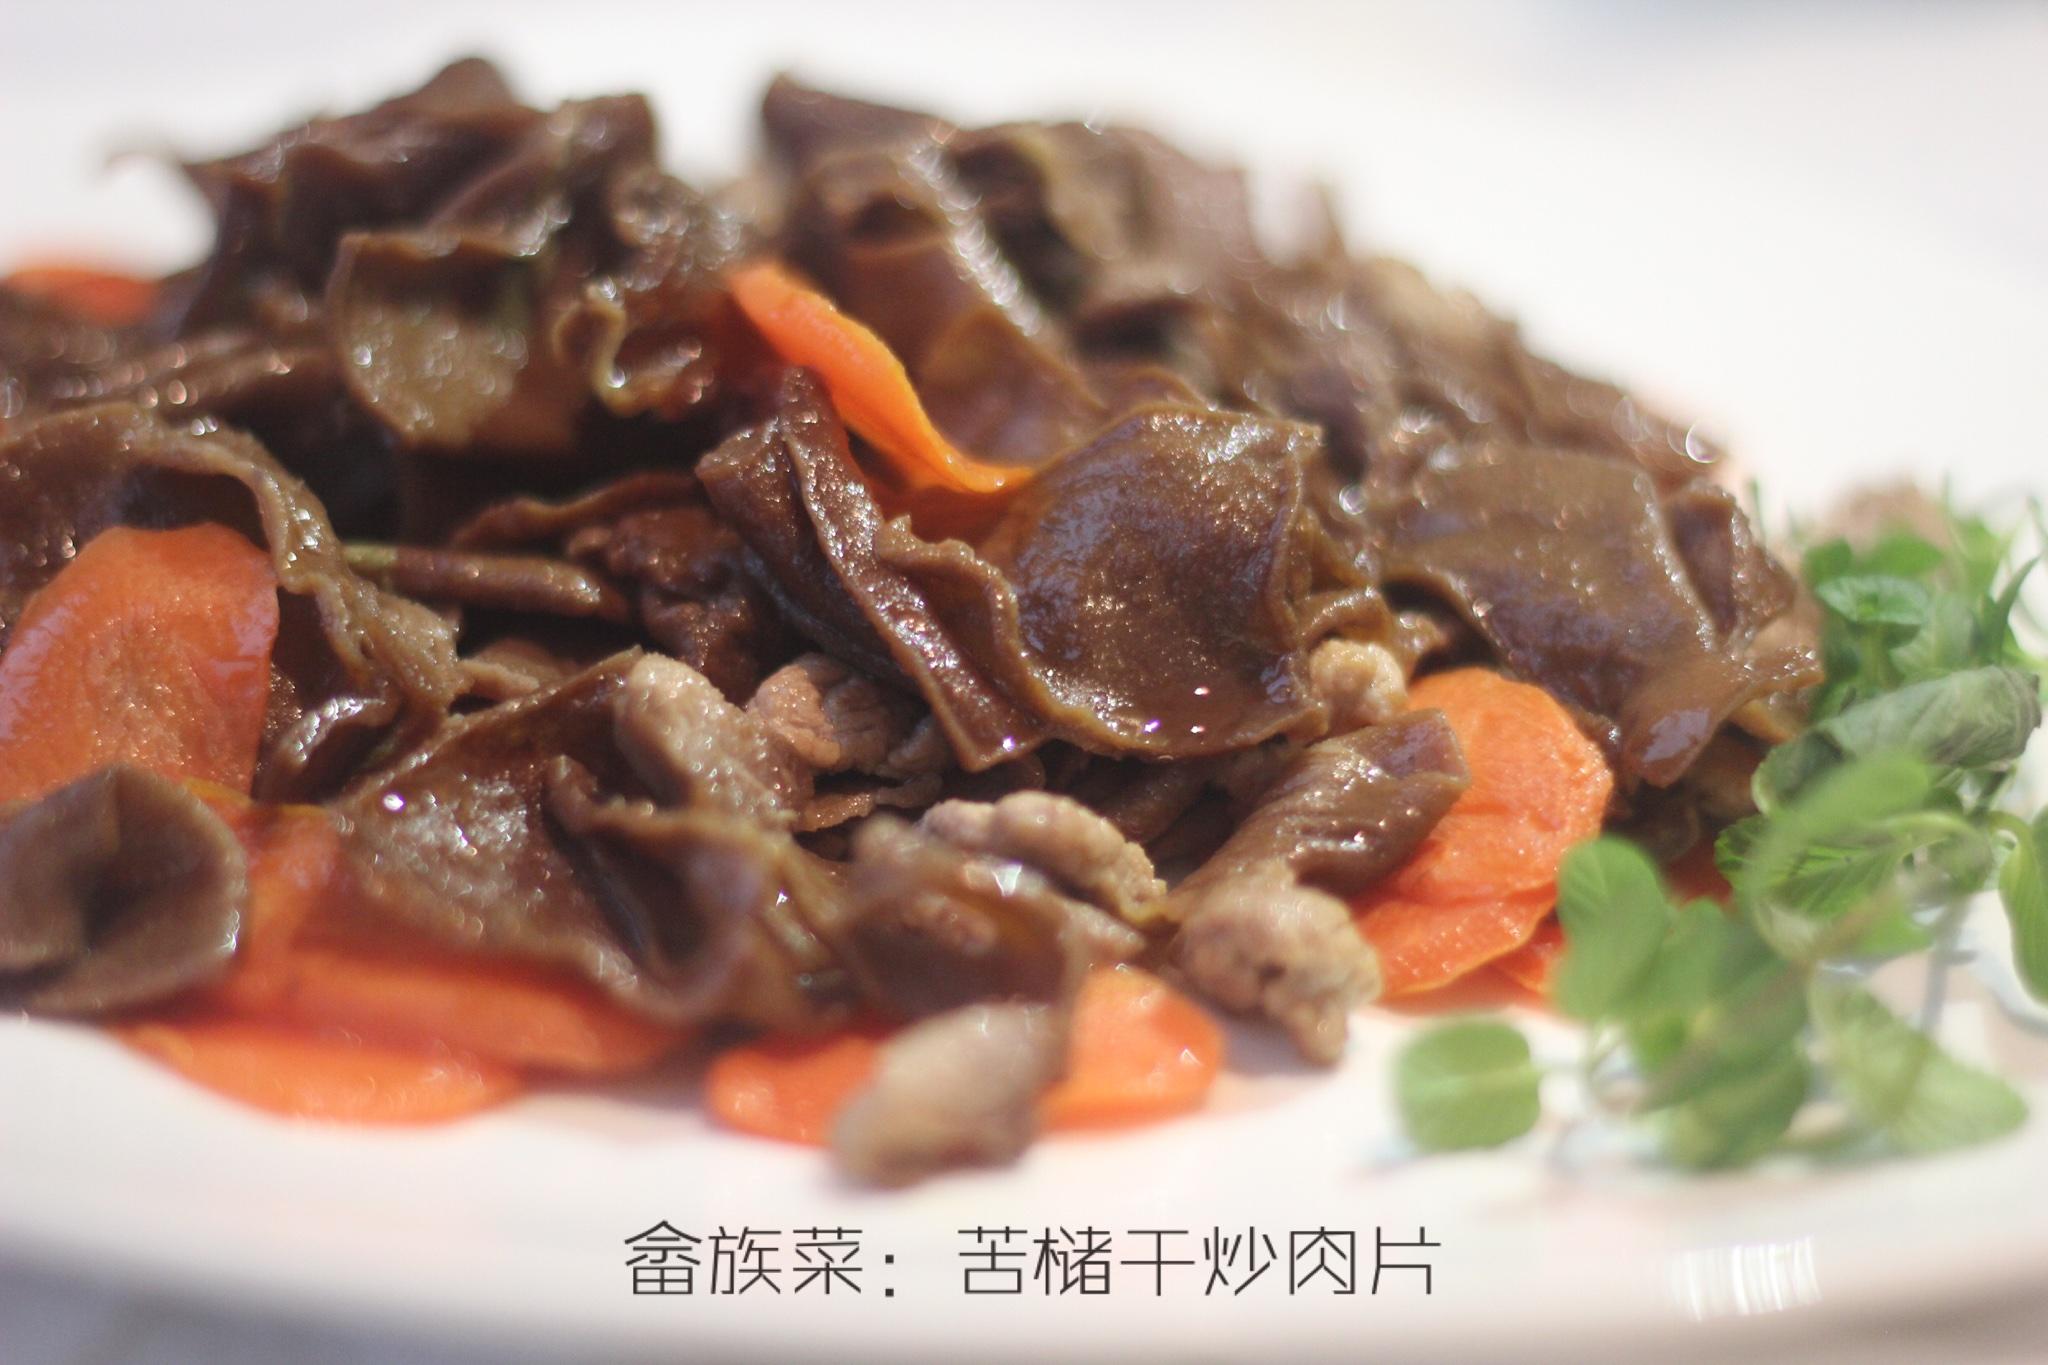 【畲族菜】苦槠干炒肉片